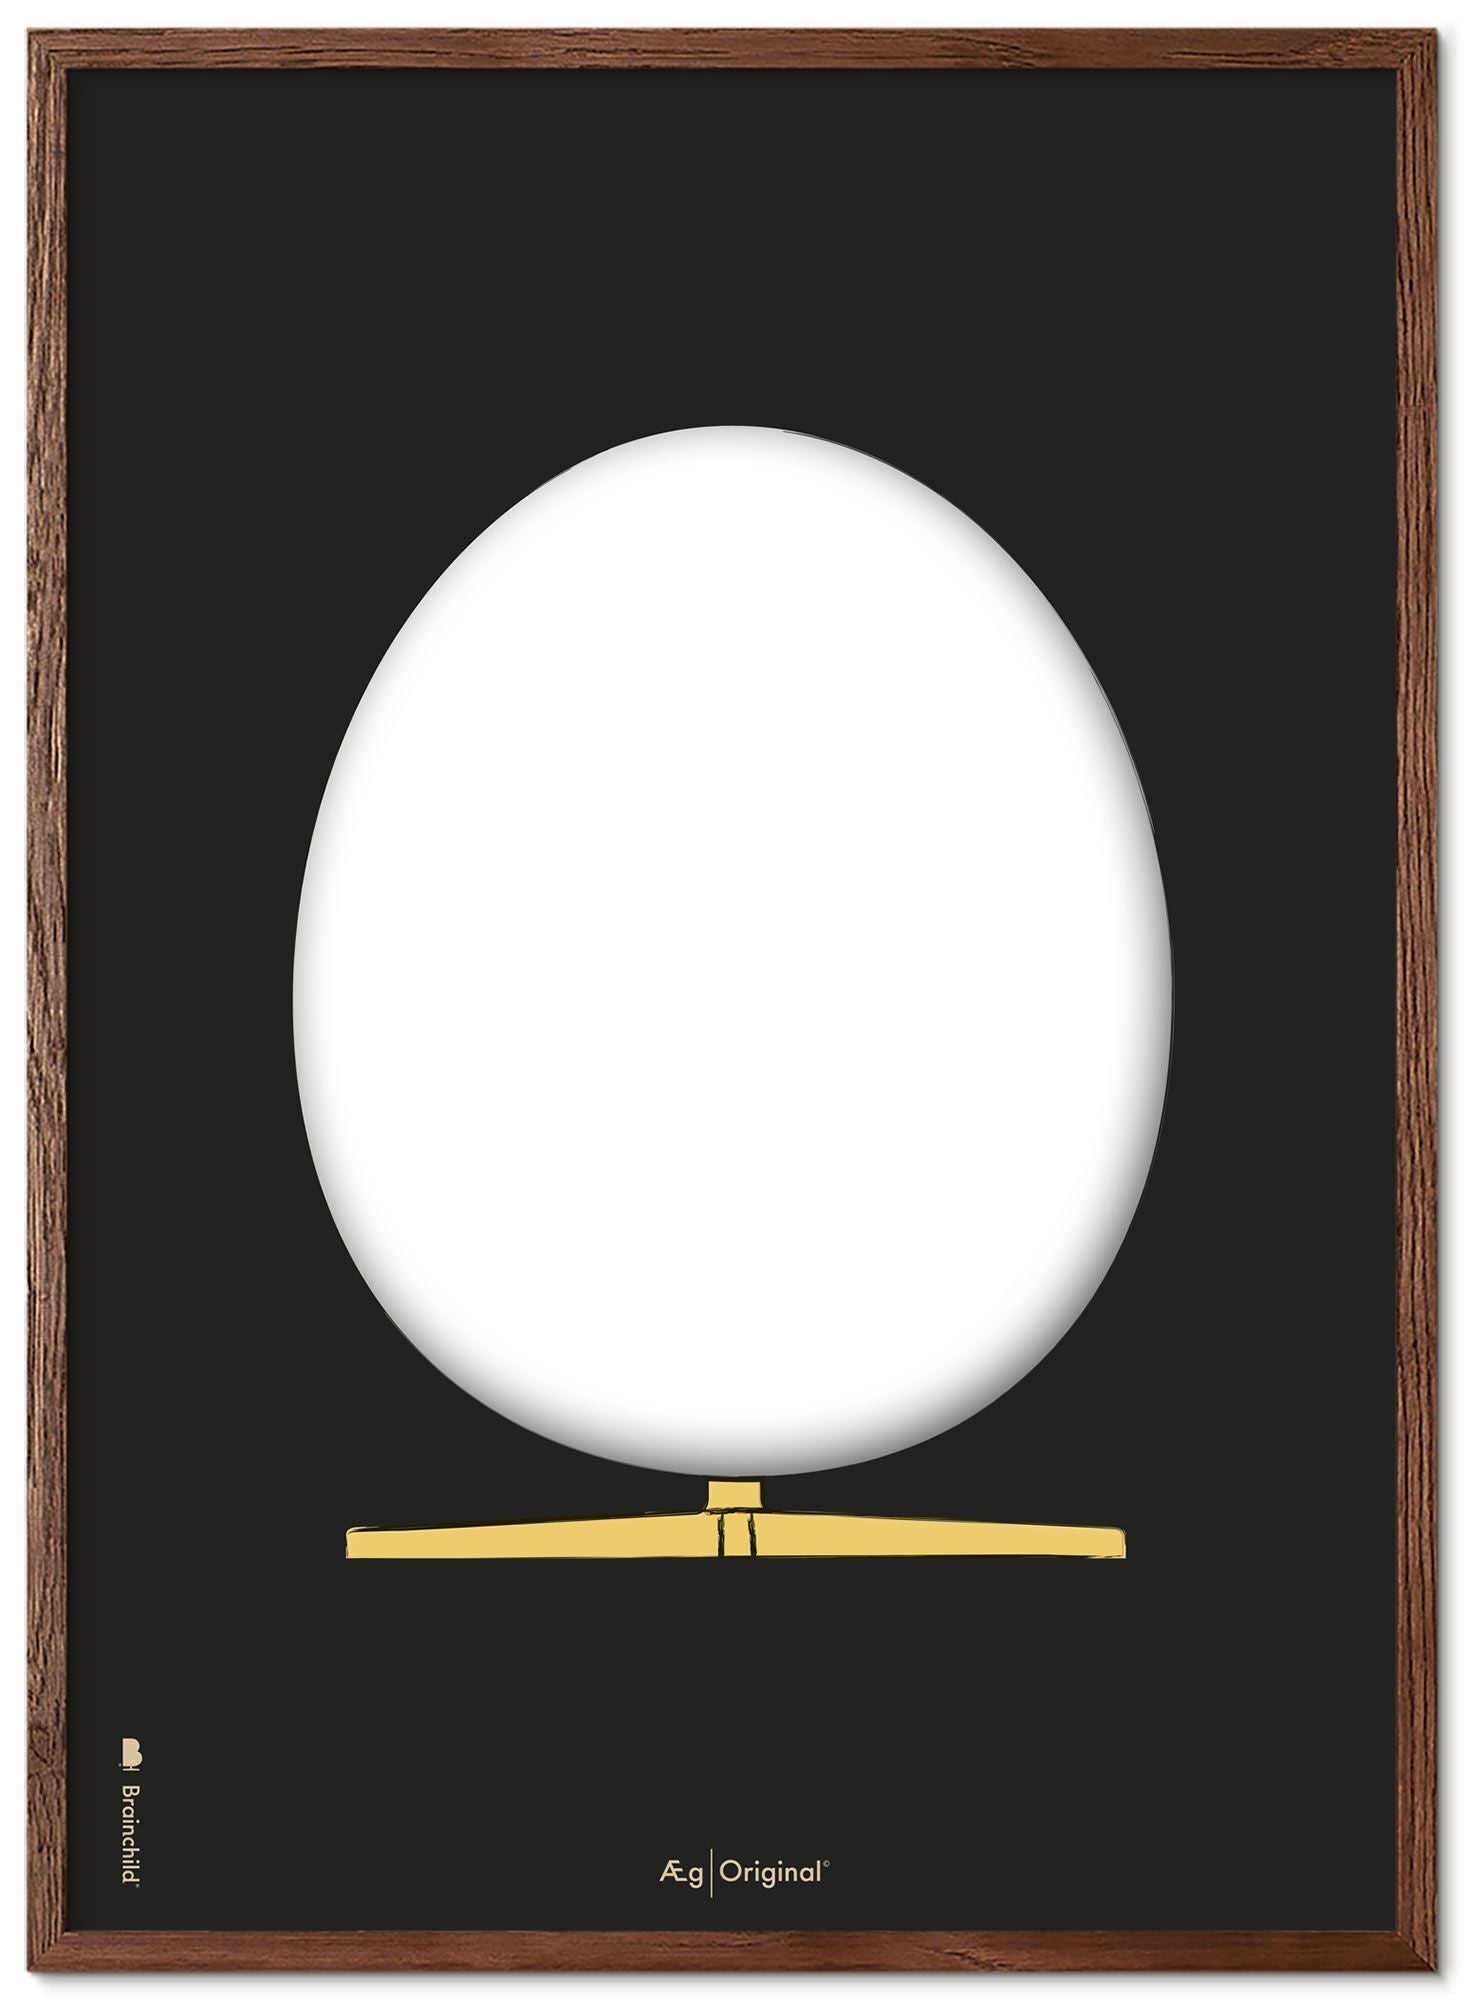 Prepare el marco de póster de boceto de diseño de huevo hecho de madera oscura 50x70 cm, fondo negro